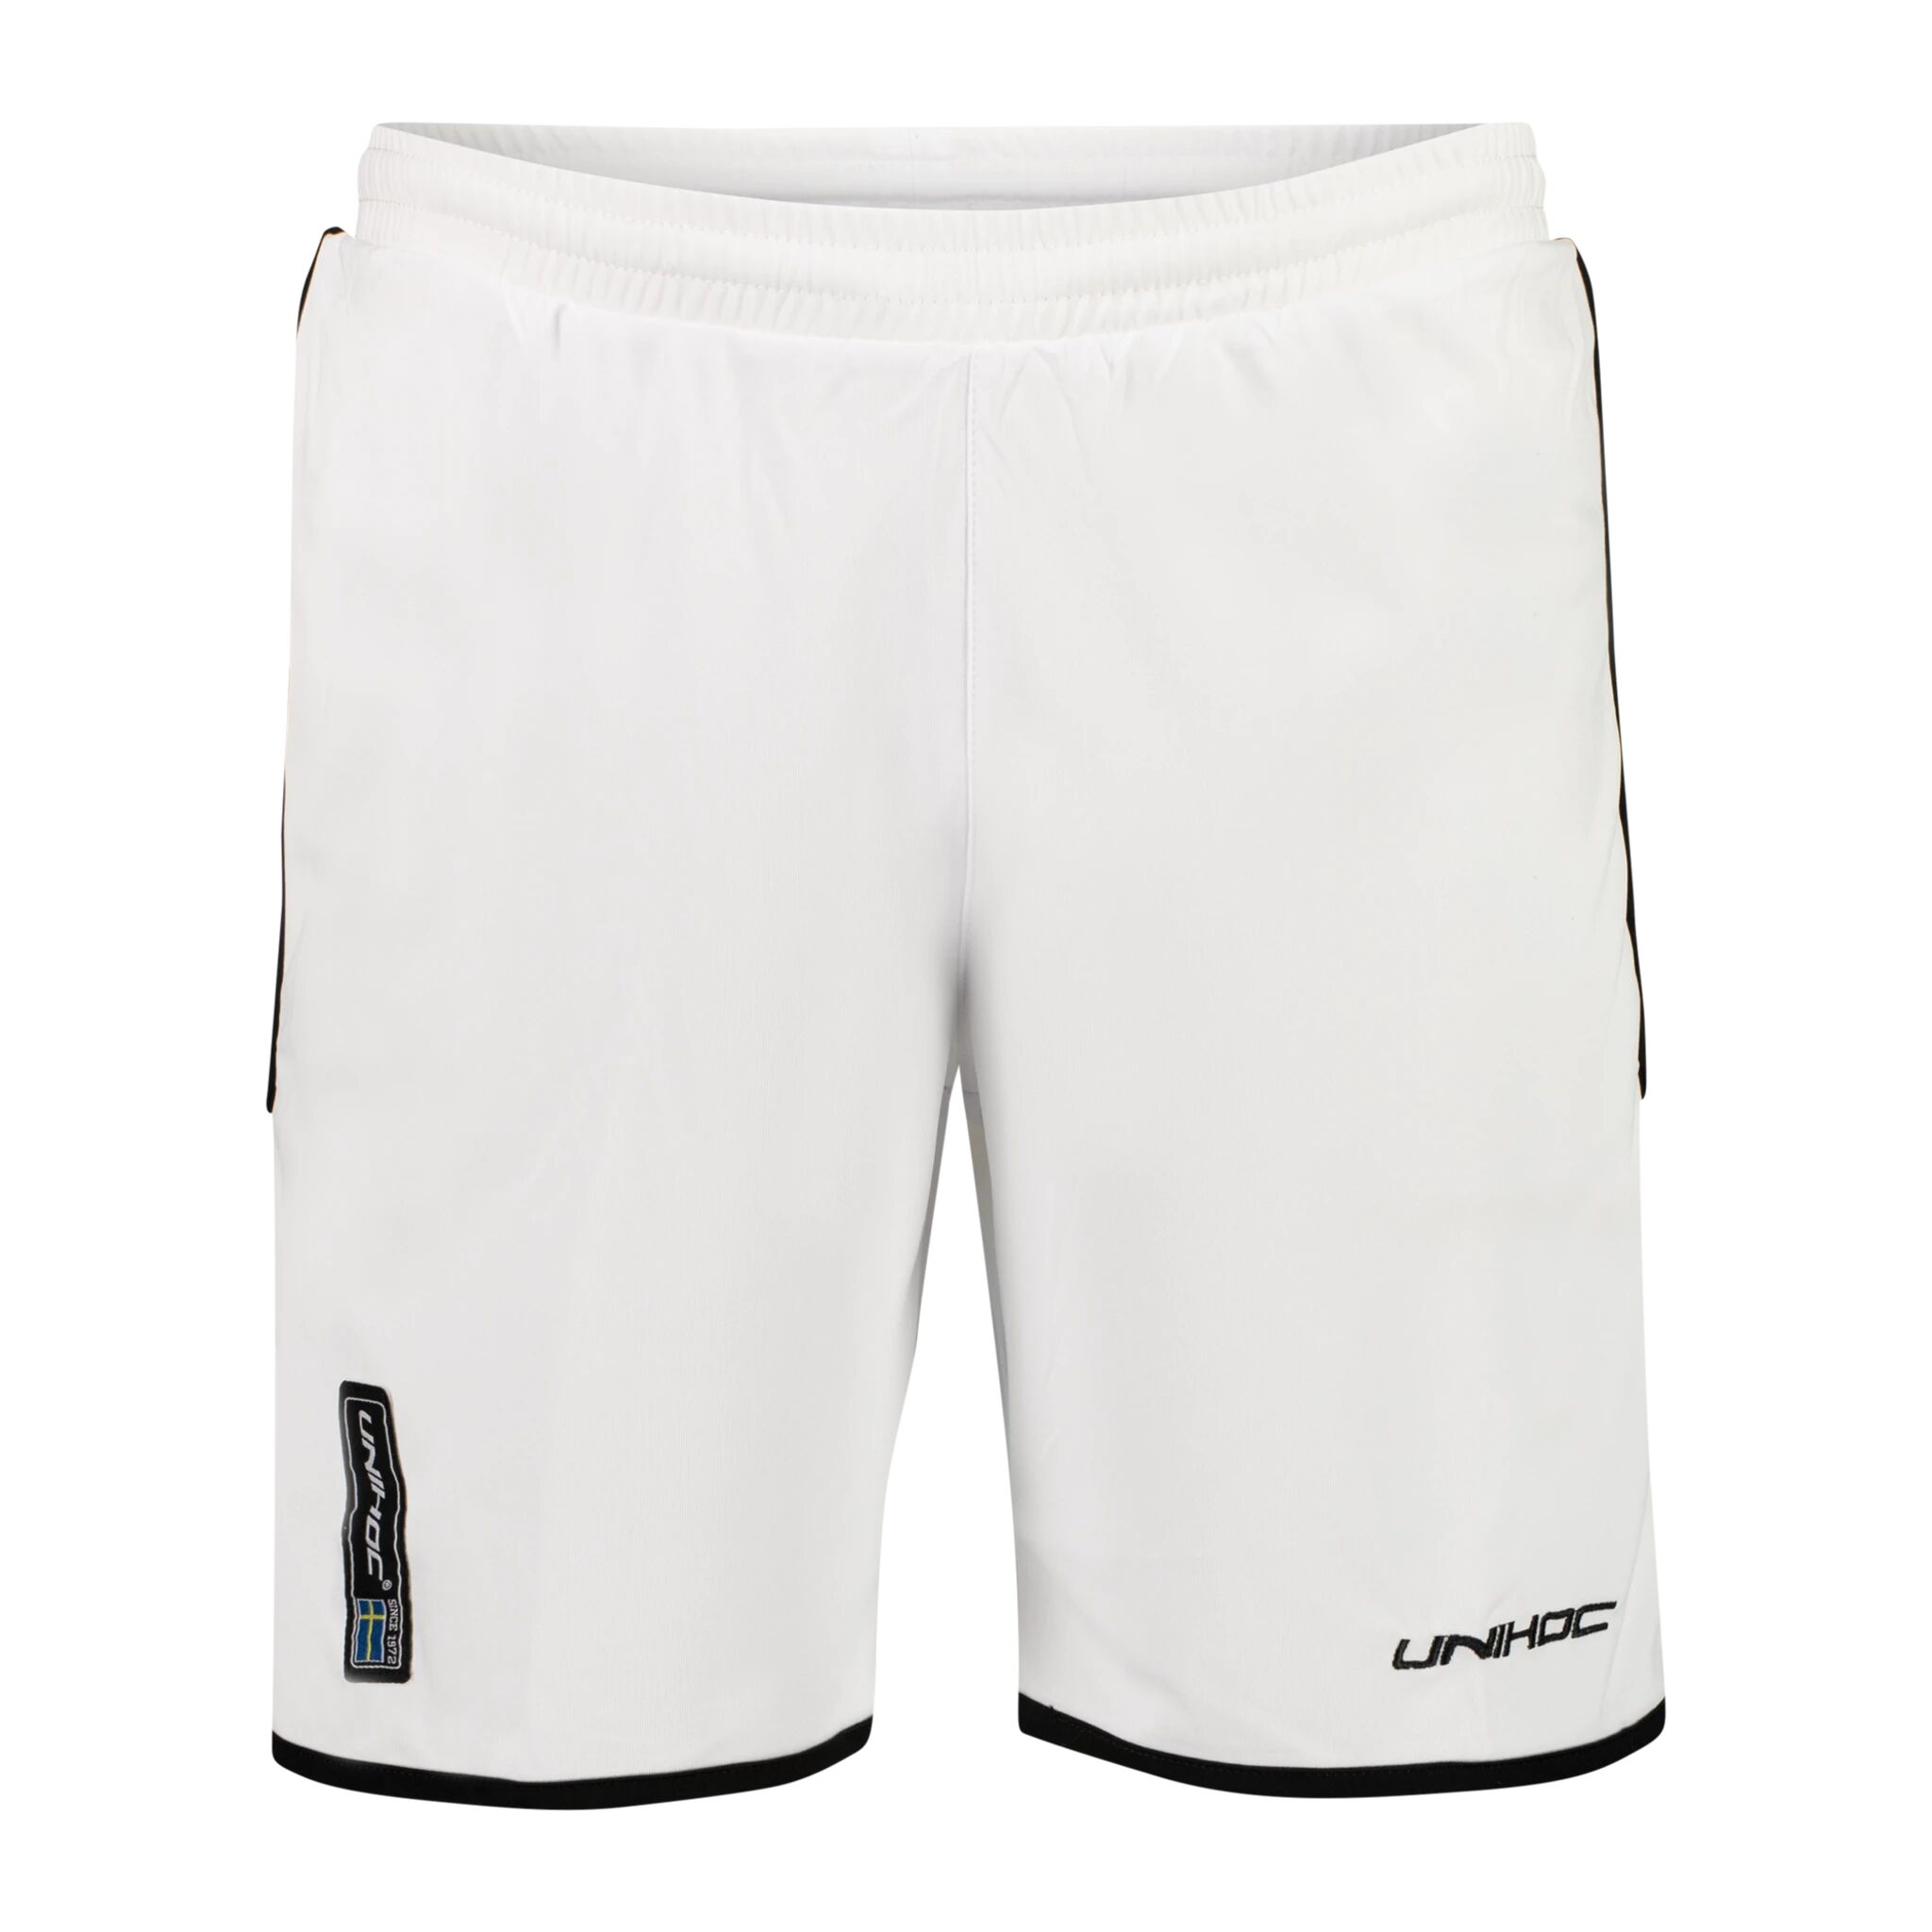 Unihoc Shorts Monaco White 160cl White